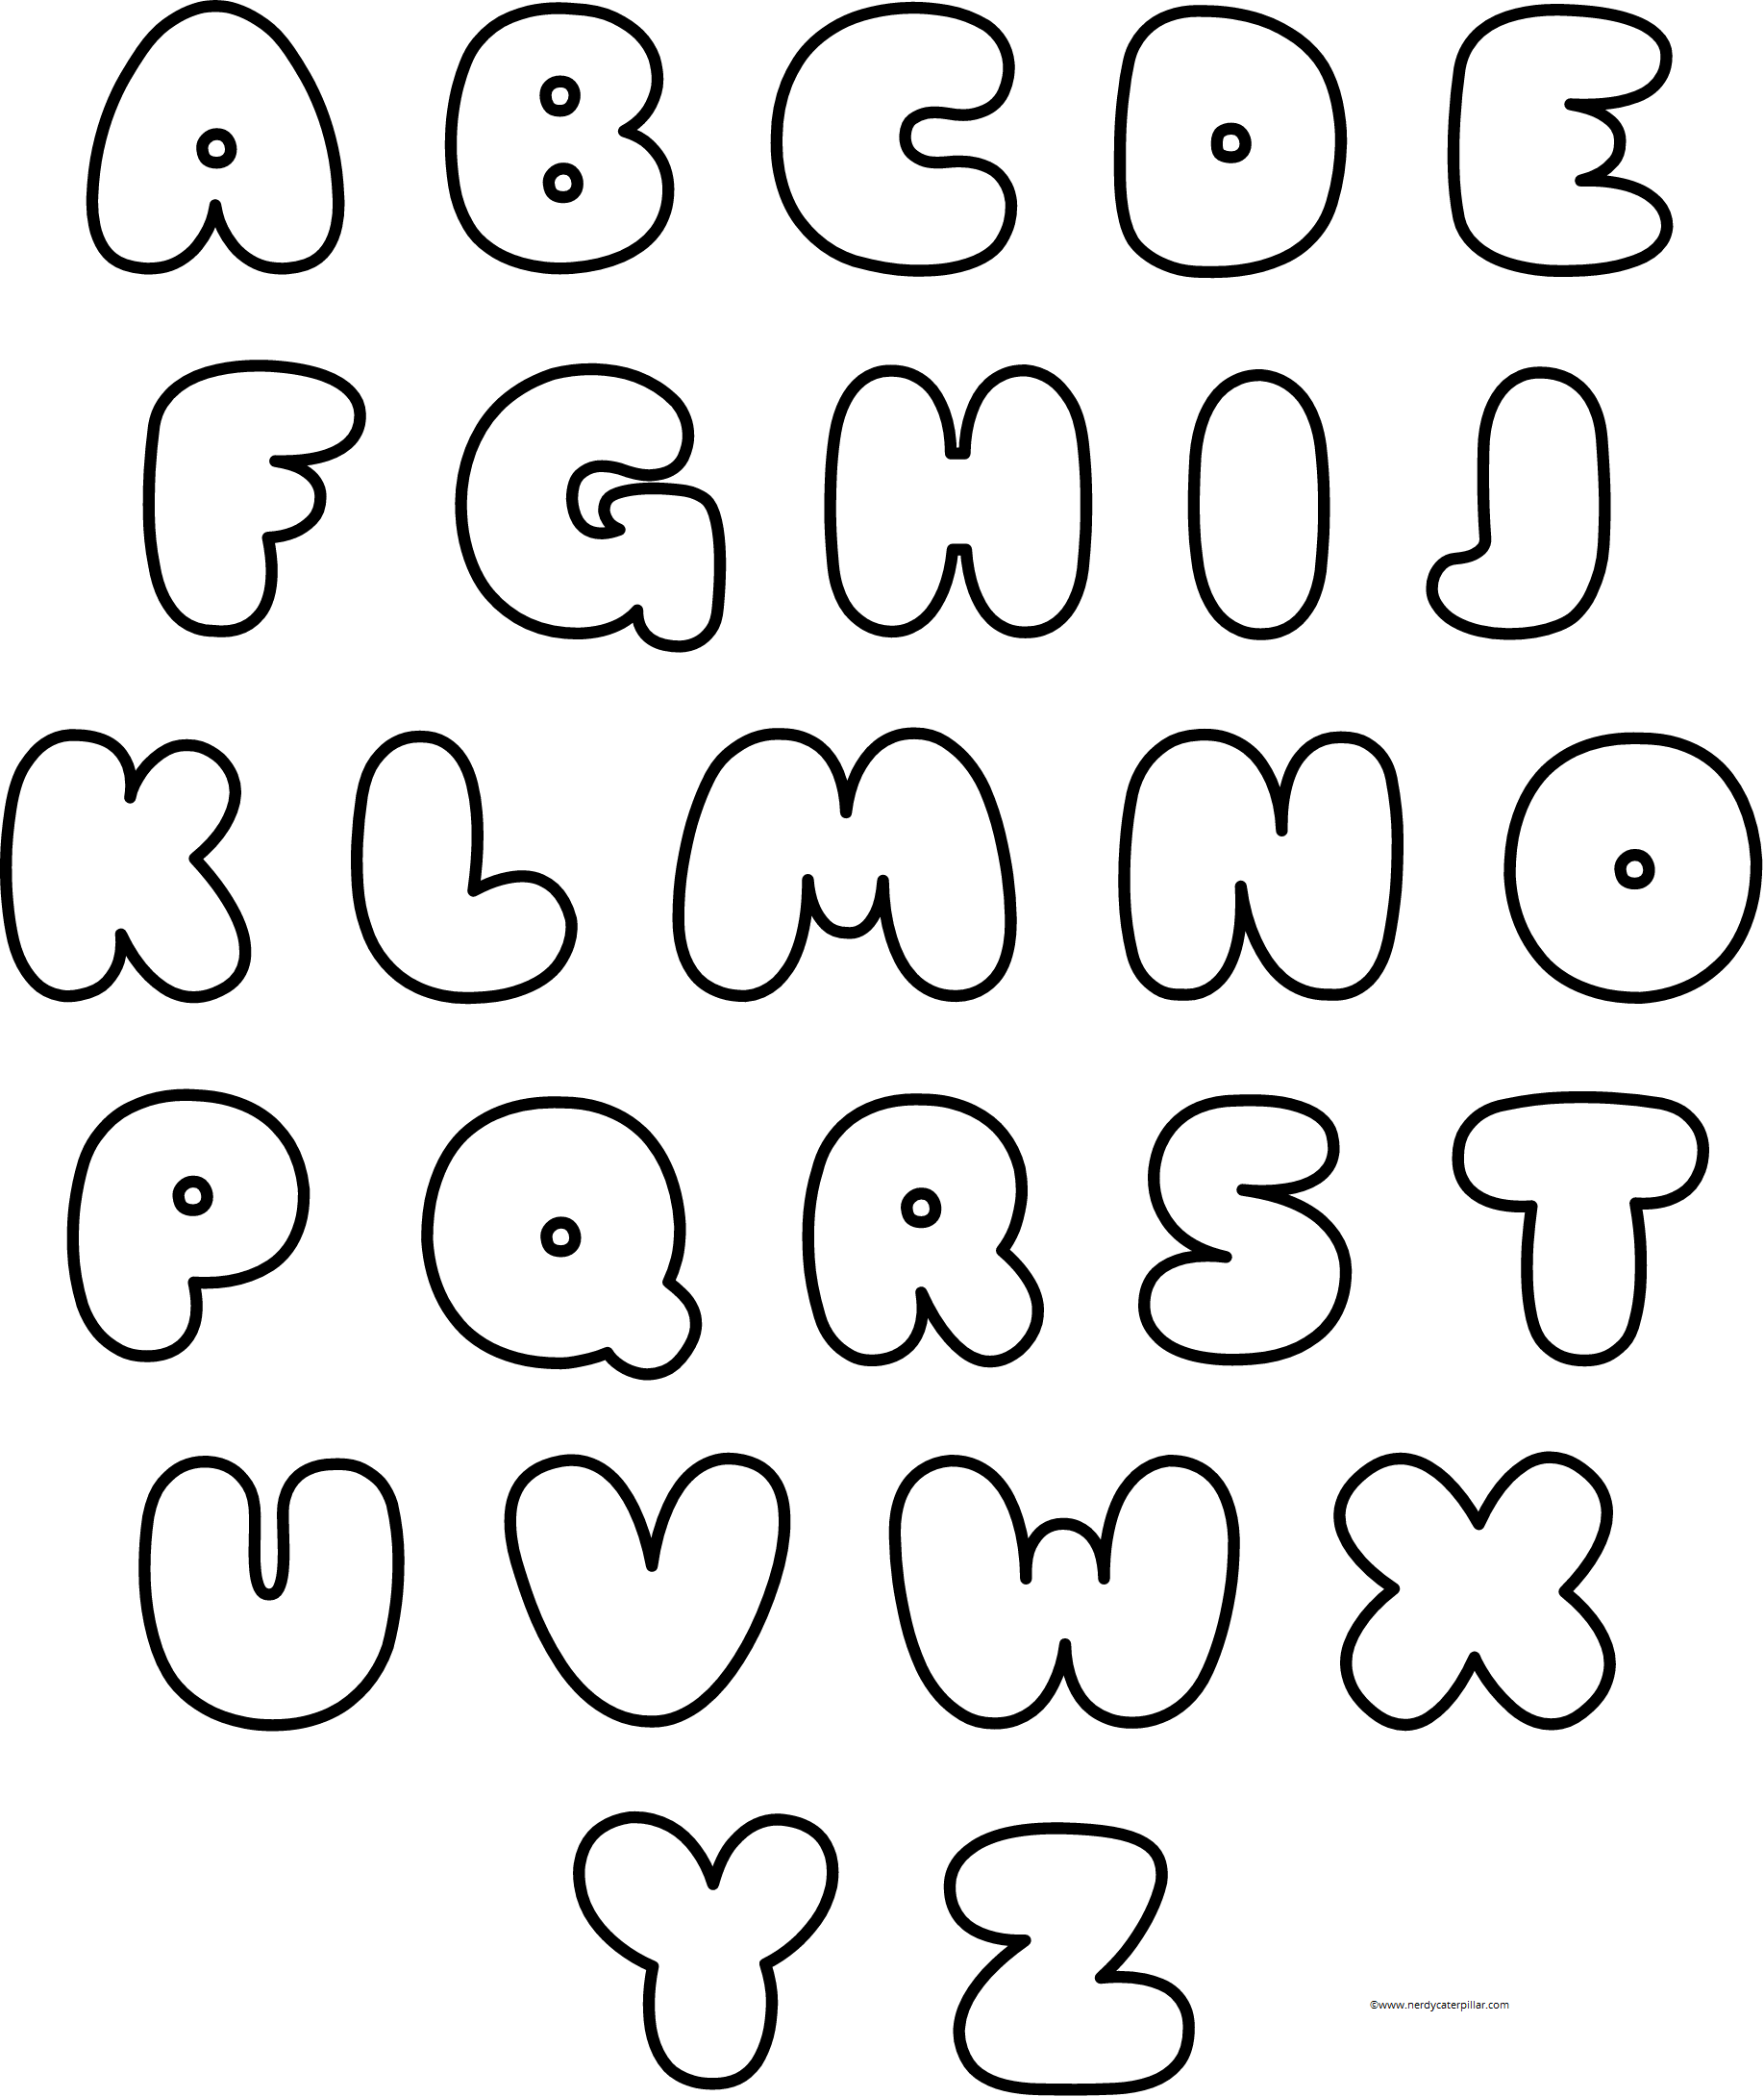 Граффити алфавит бабл